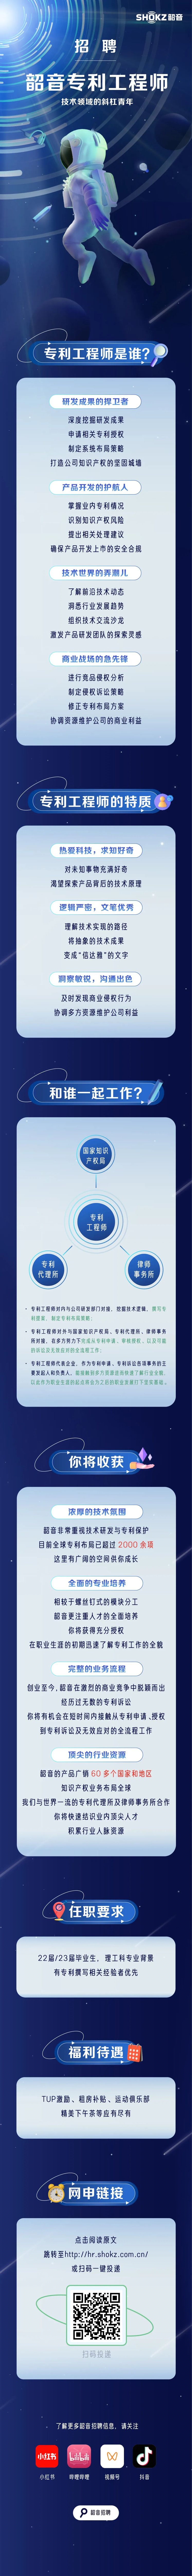 聘！深圳韶音科技有限公司招聘「专利工程师」